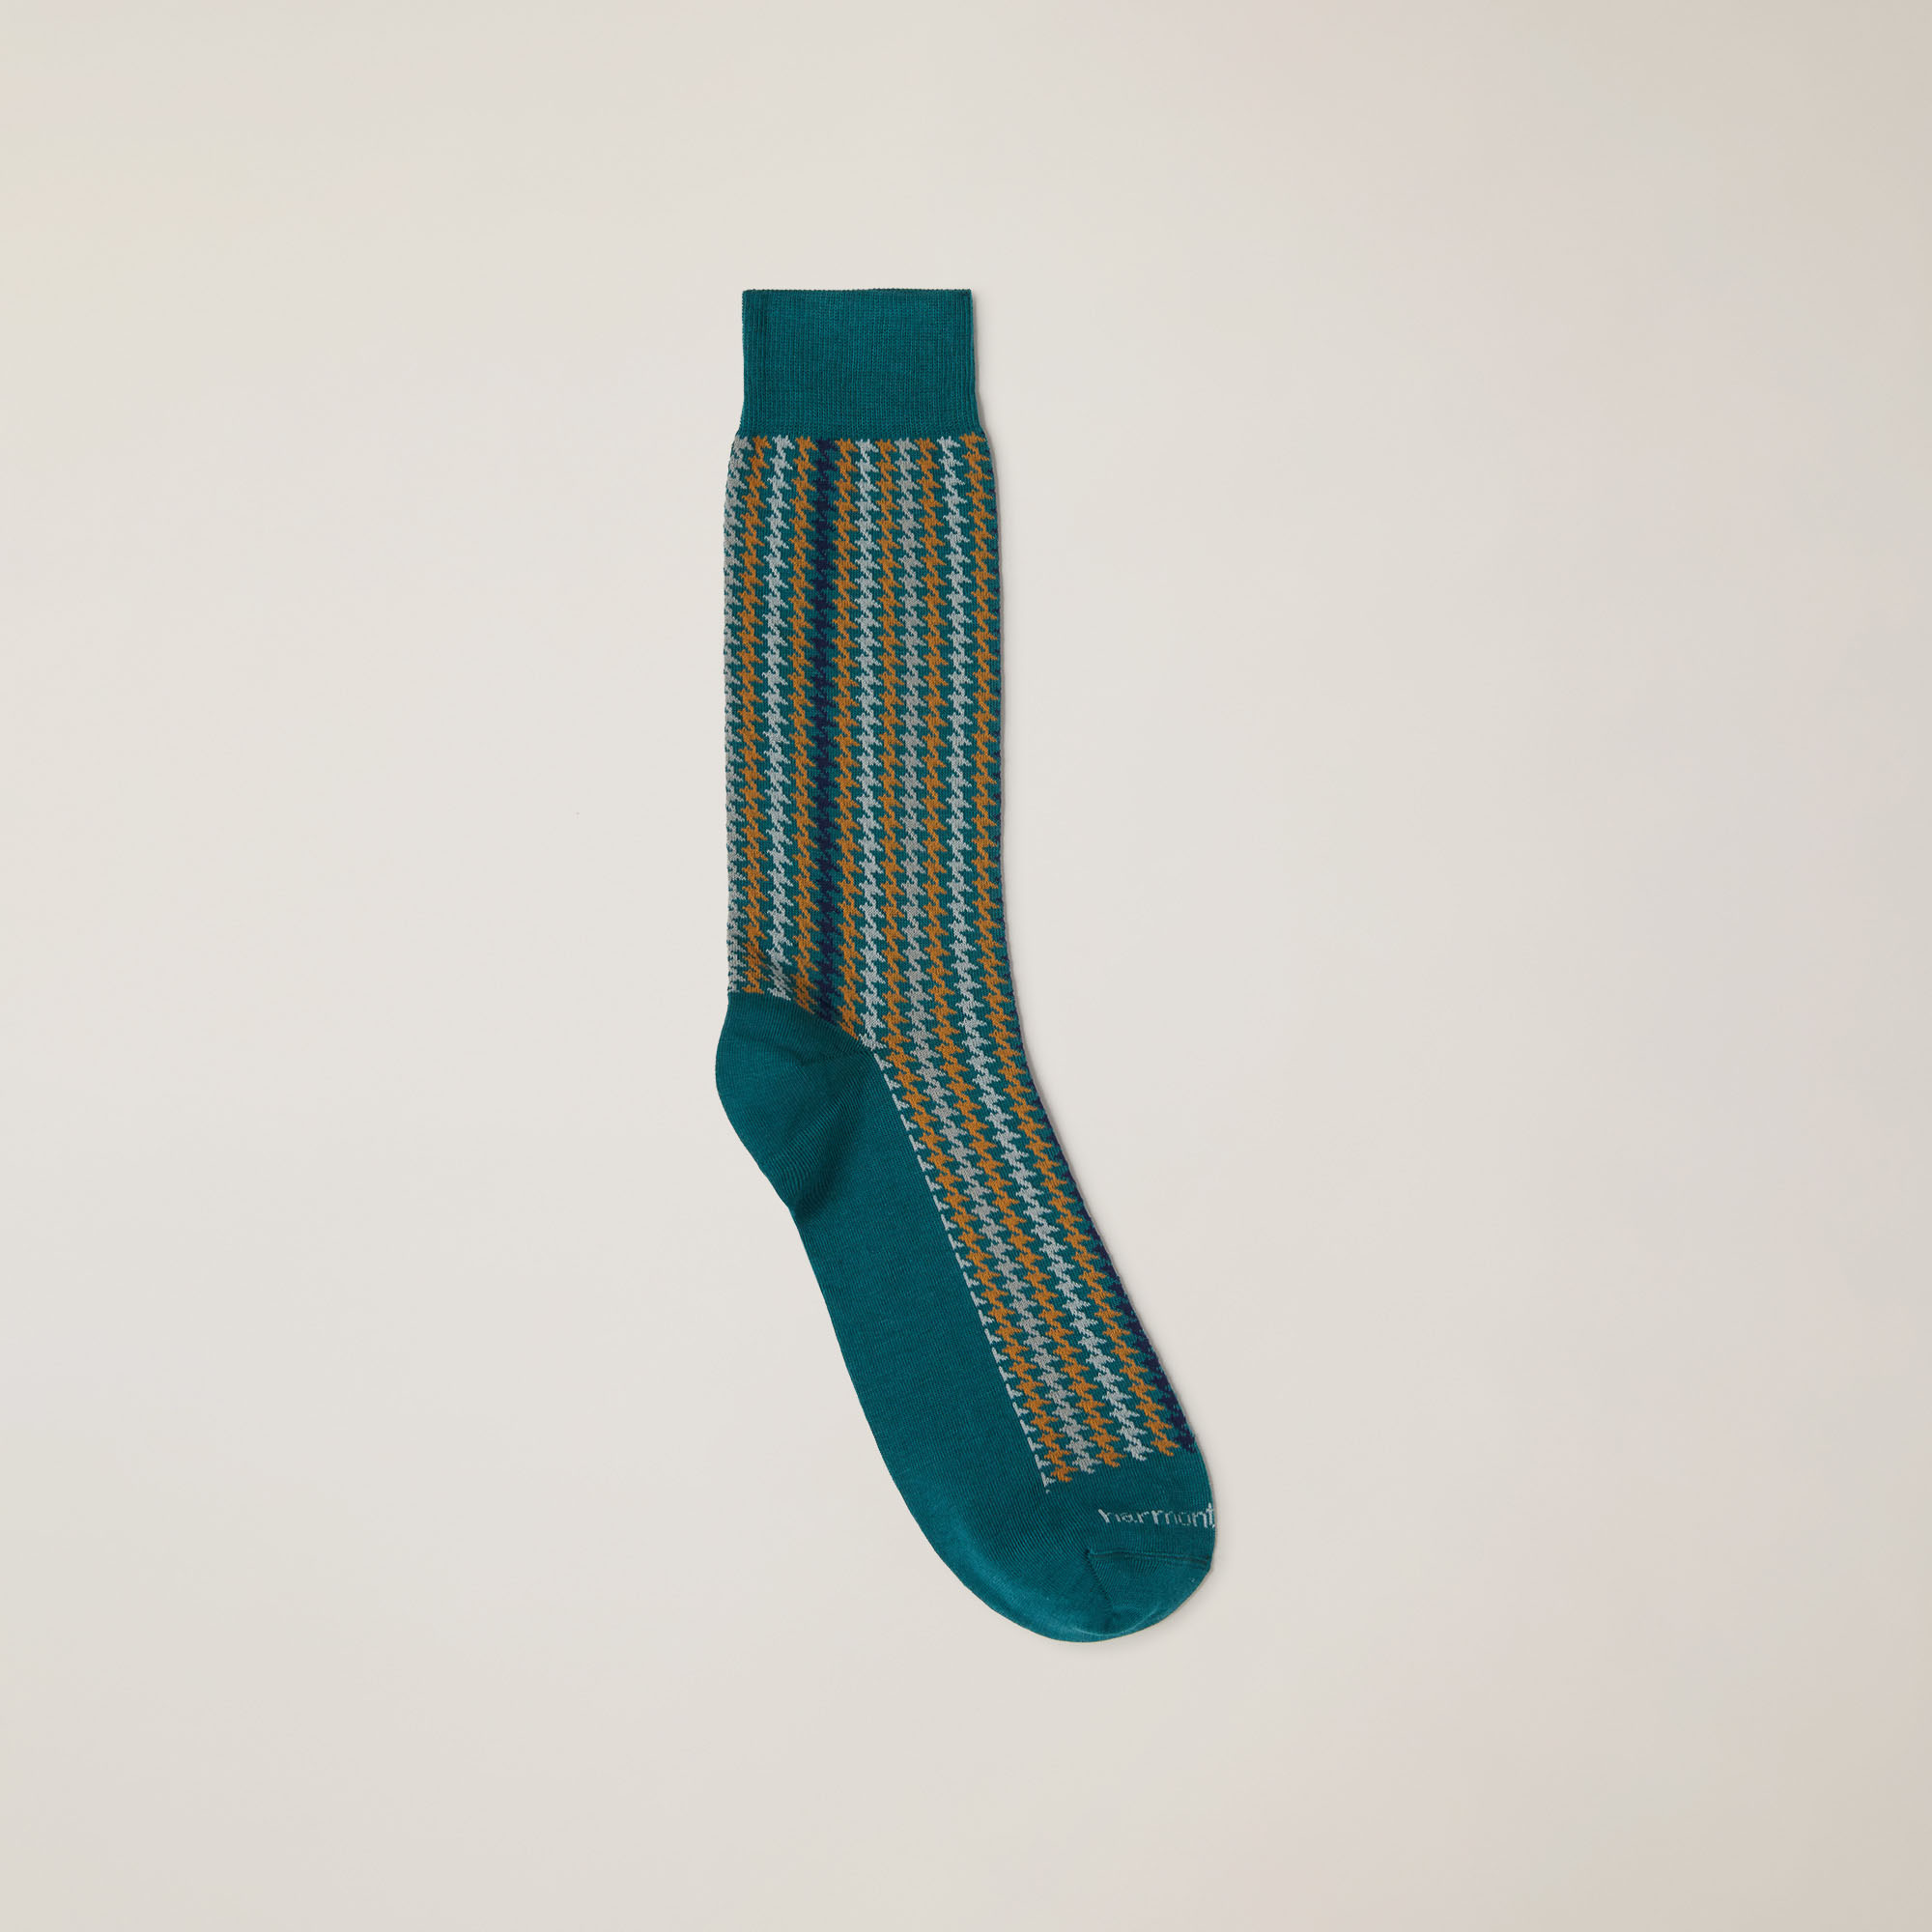 Houndstooth-Patterned Short Socks, Blue, large